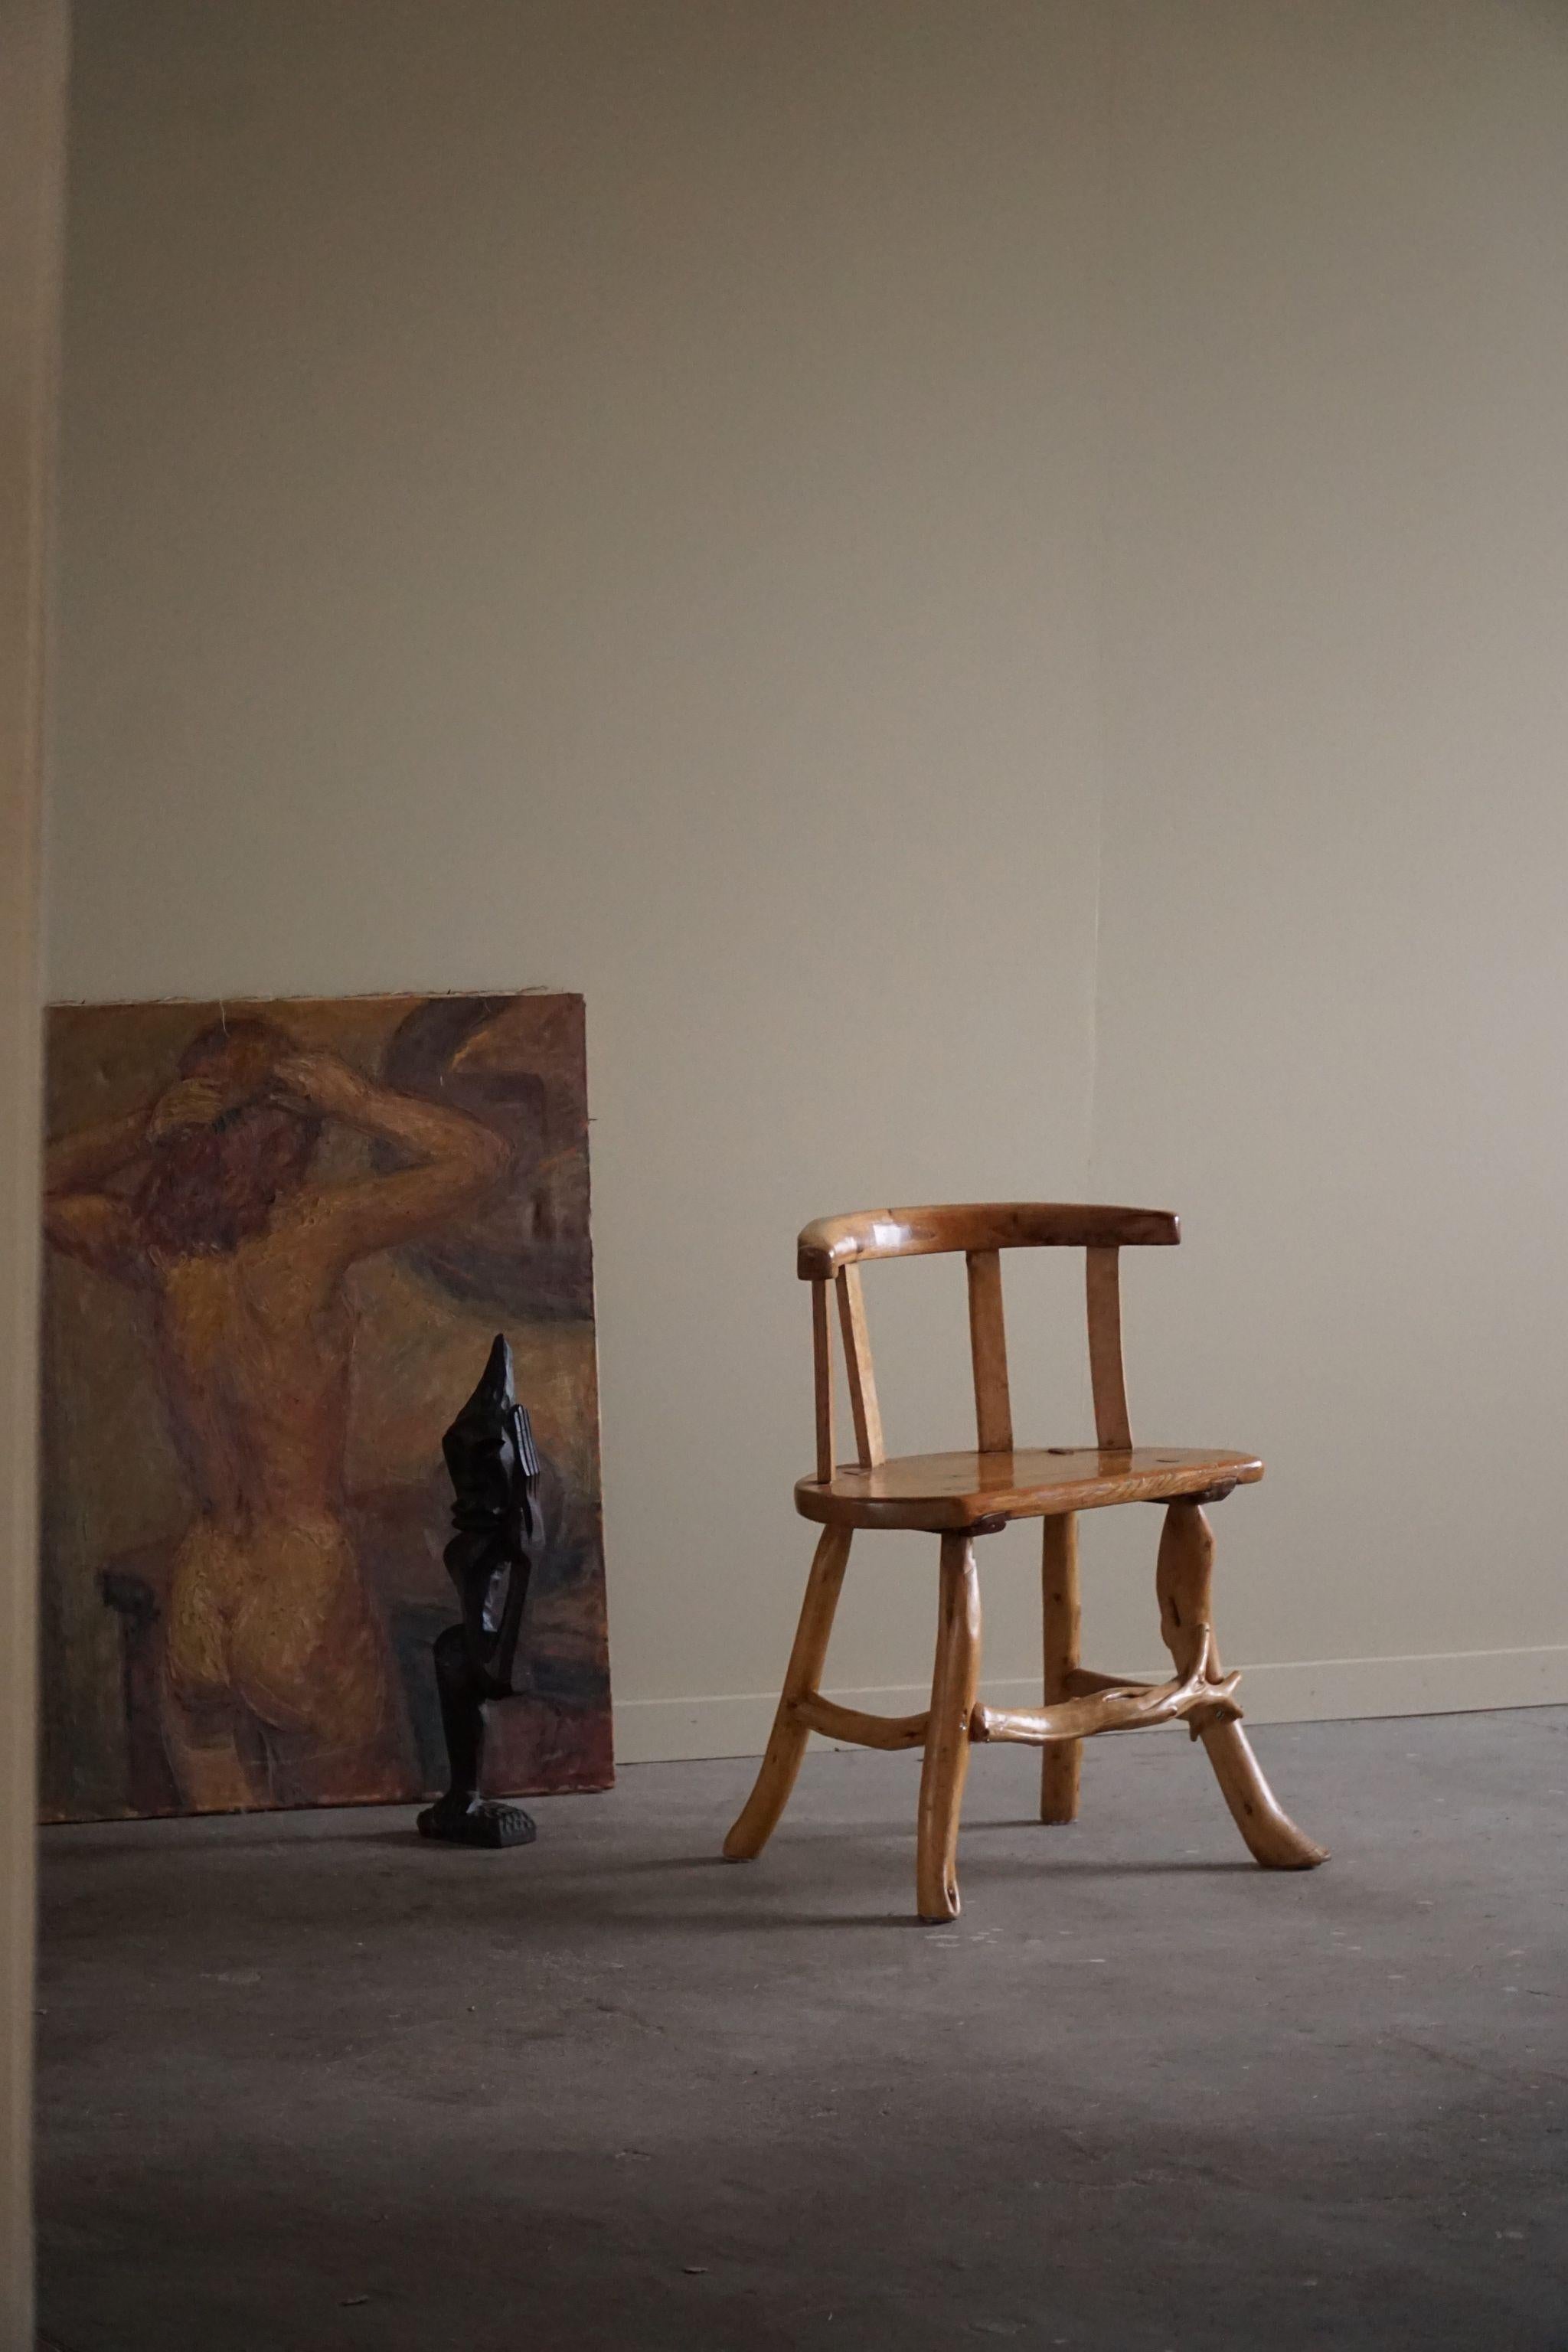 Chaise scandinave décorative de forme organique en pin massif. Sculpté à la main par un ébéniste suédois dans les années 1950.

Cette chaise wabi sabi s'adapte à de nombreux types de décors. Un style d'intérieur moderne, scandinave ou Art déco.

Un